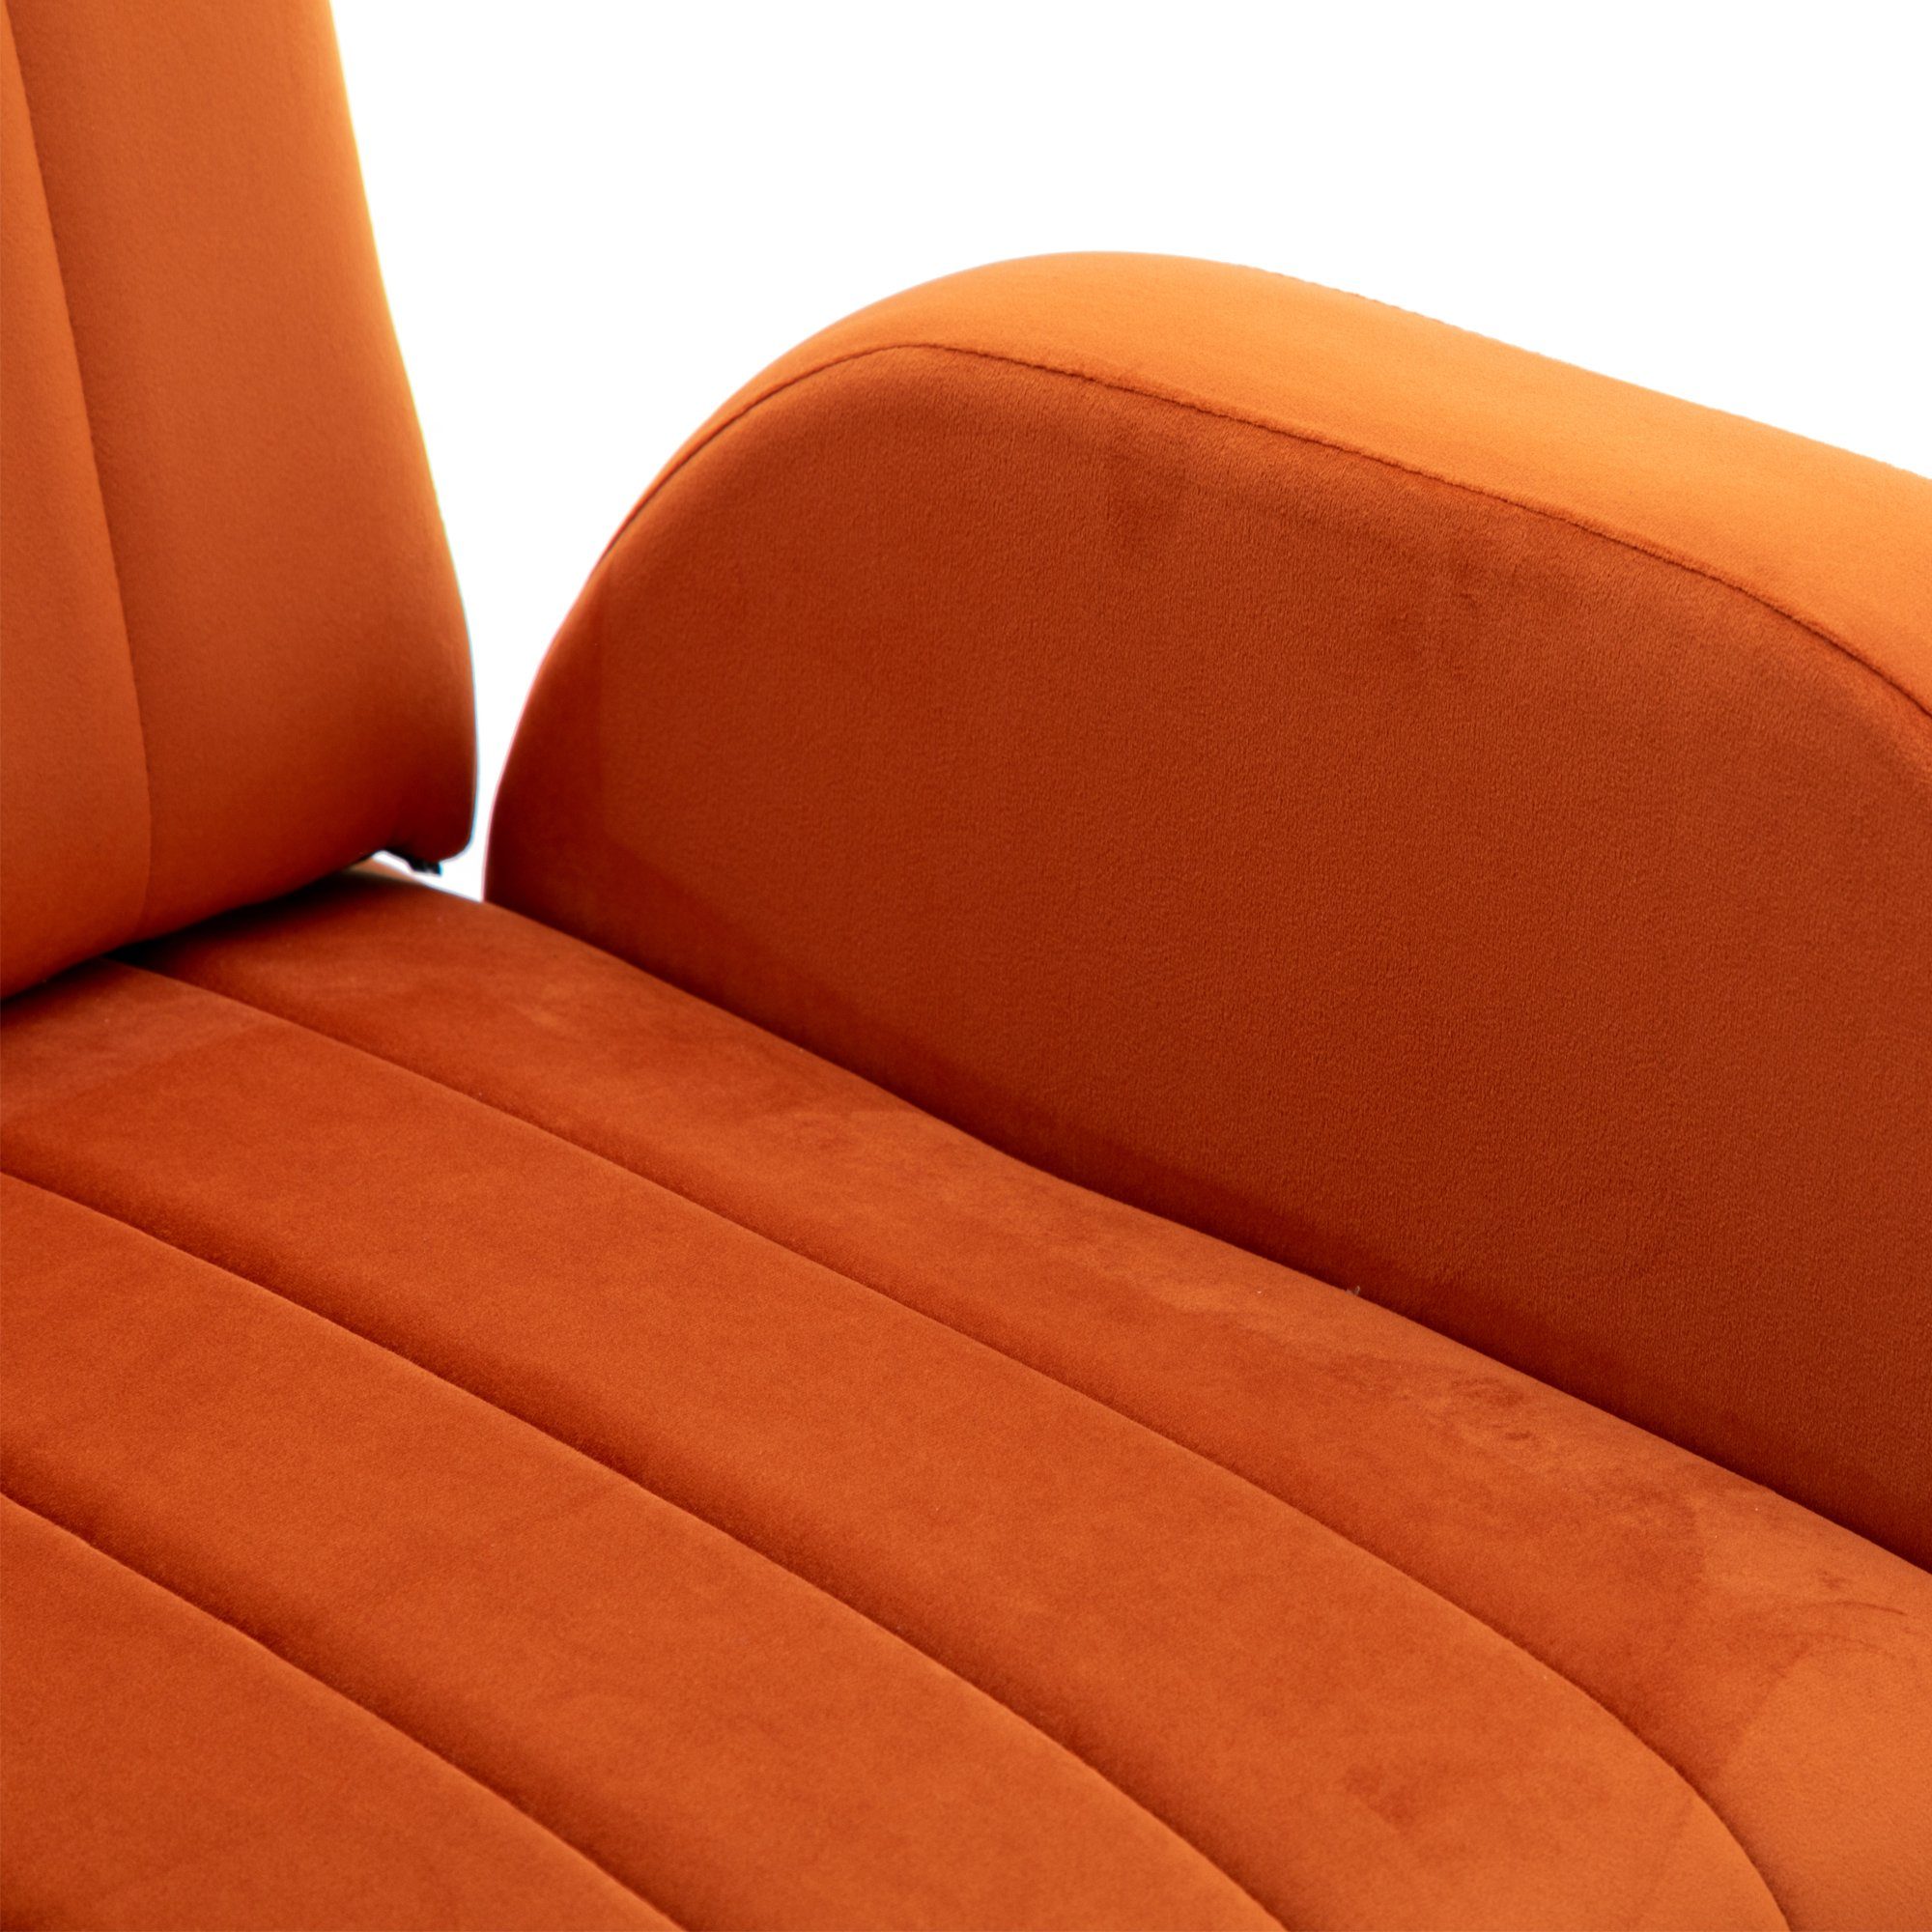 Odikalo Loungesessel Einzelsofa Akzent Stuhl Freizeit mehrfarbig goldene Orange Füßen gepolstert